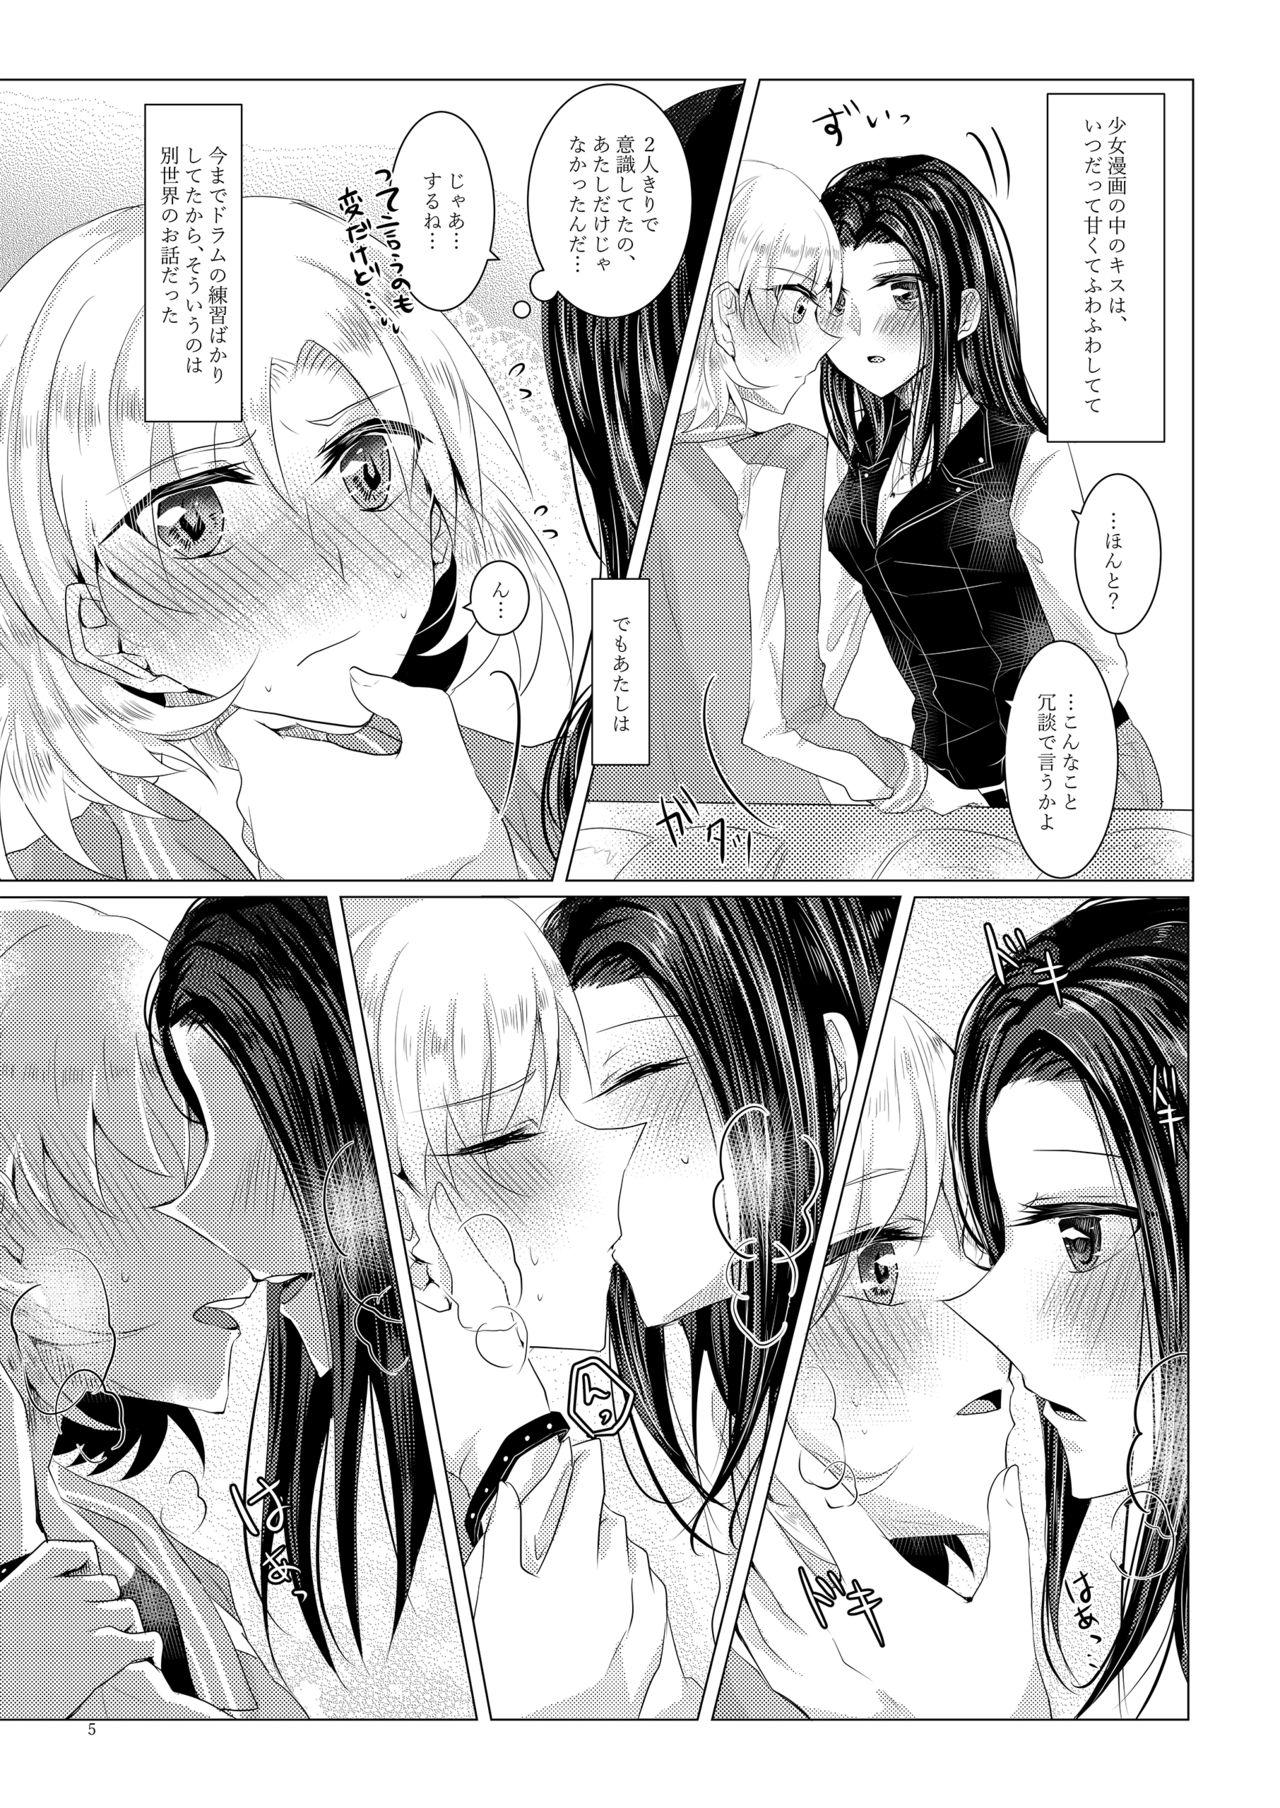 Fun Sayokyoku yori mo Yasashii Kiss o shite - Bang dream Rough Sex - Page 4